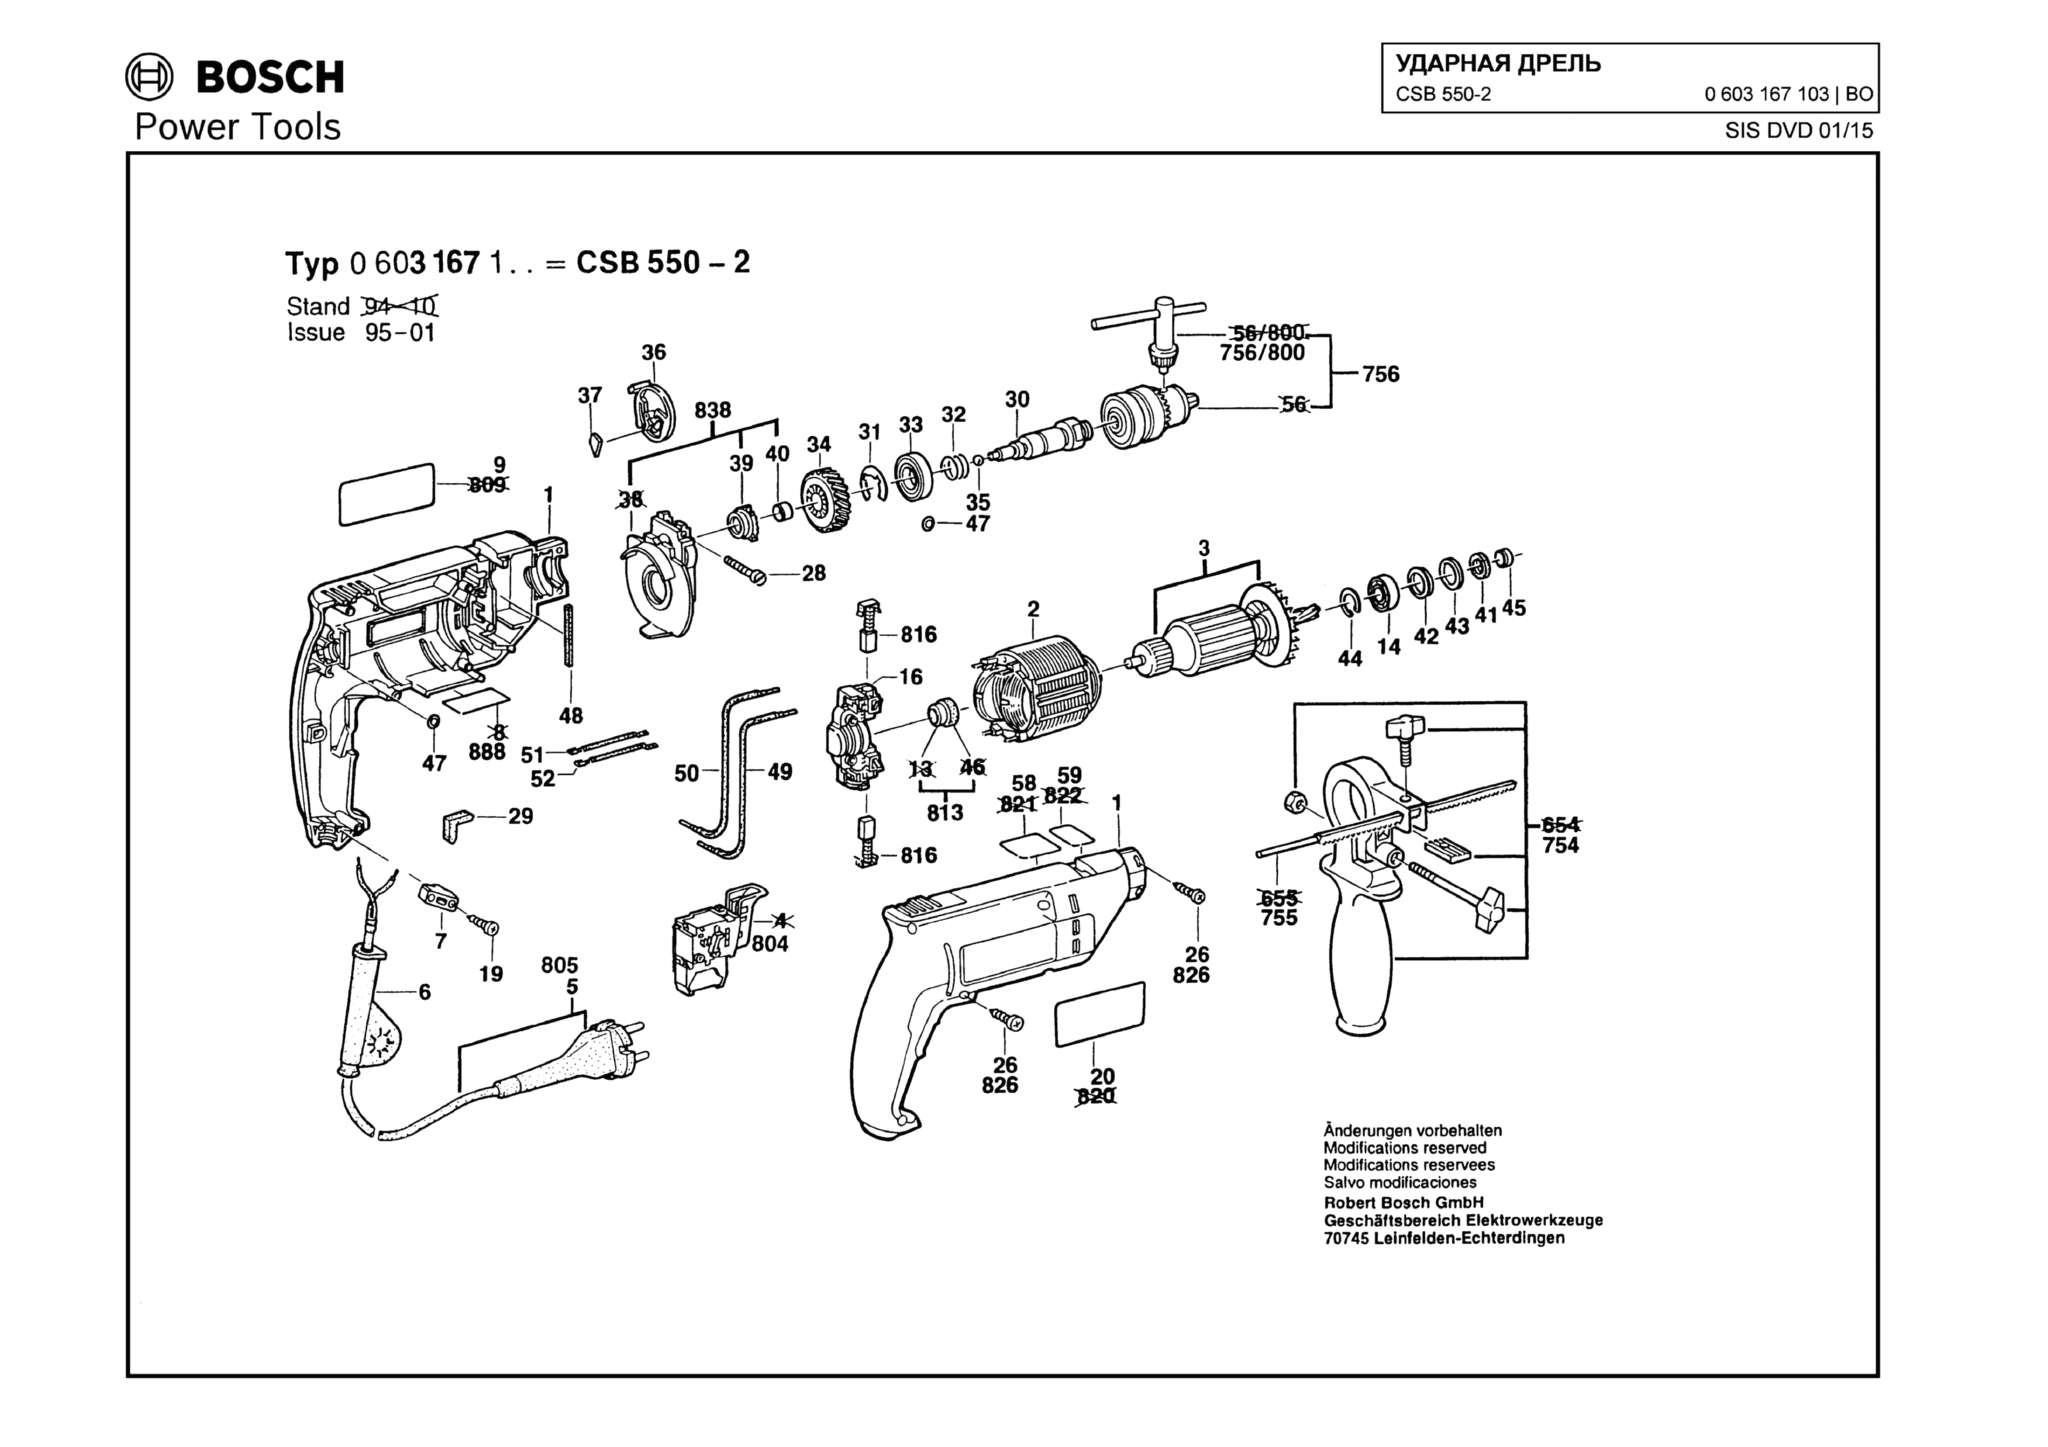 Запчасти, схема и деталировка Bosch CSB 550-2 (ТИП 0603167103)